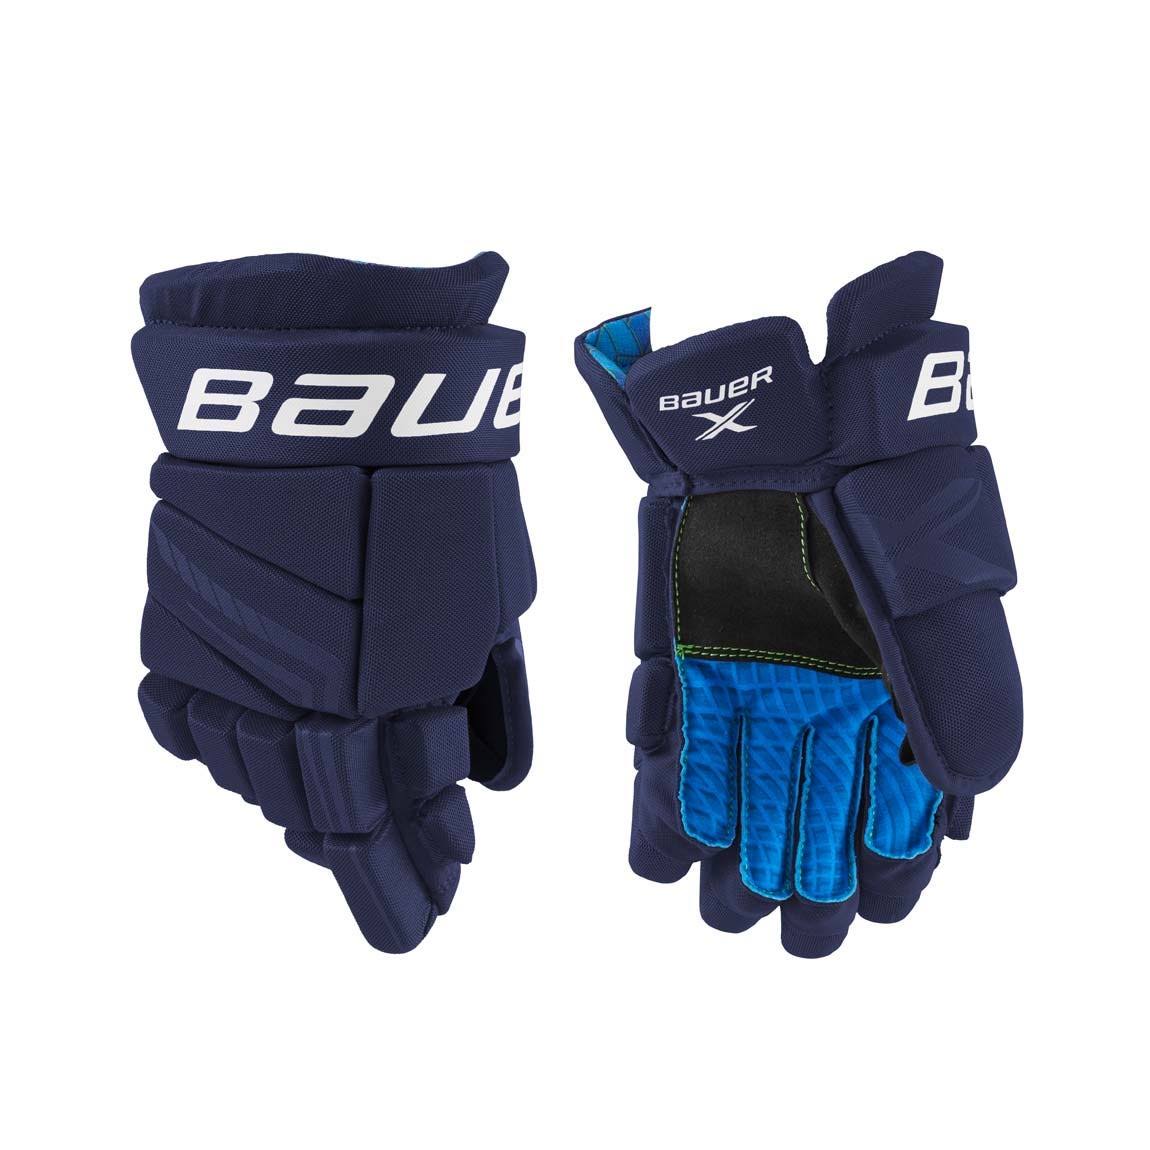 Bauer x Hockey Gloves - Junior - Navy - 11.0"